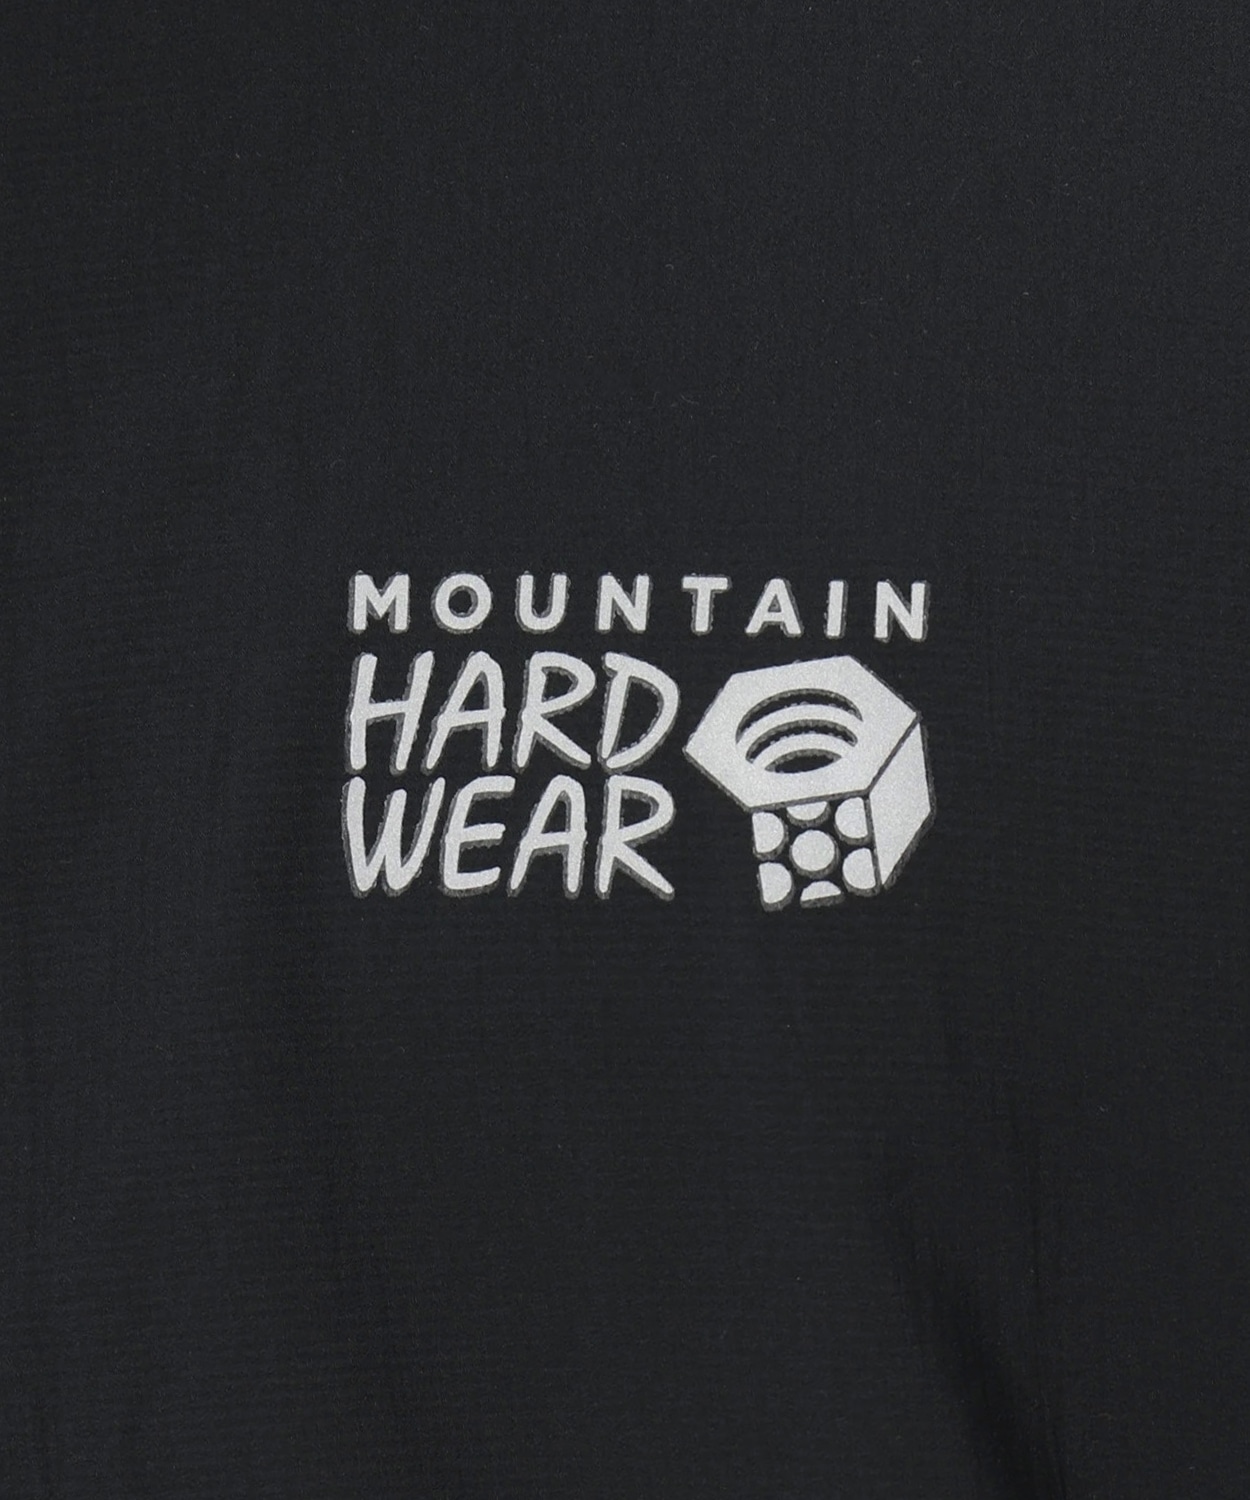 マウンテンハードウェア(Mountain Hardwear)公式サイトコアエアシェルフルジップジャケット(S Black):  アウトレット商品以外用登山、クライミングのアウトドアウェア、アウトドアギアのマウンテンハードウェア(Mountain Hardwear)公式通販サイト